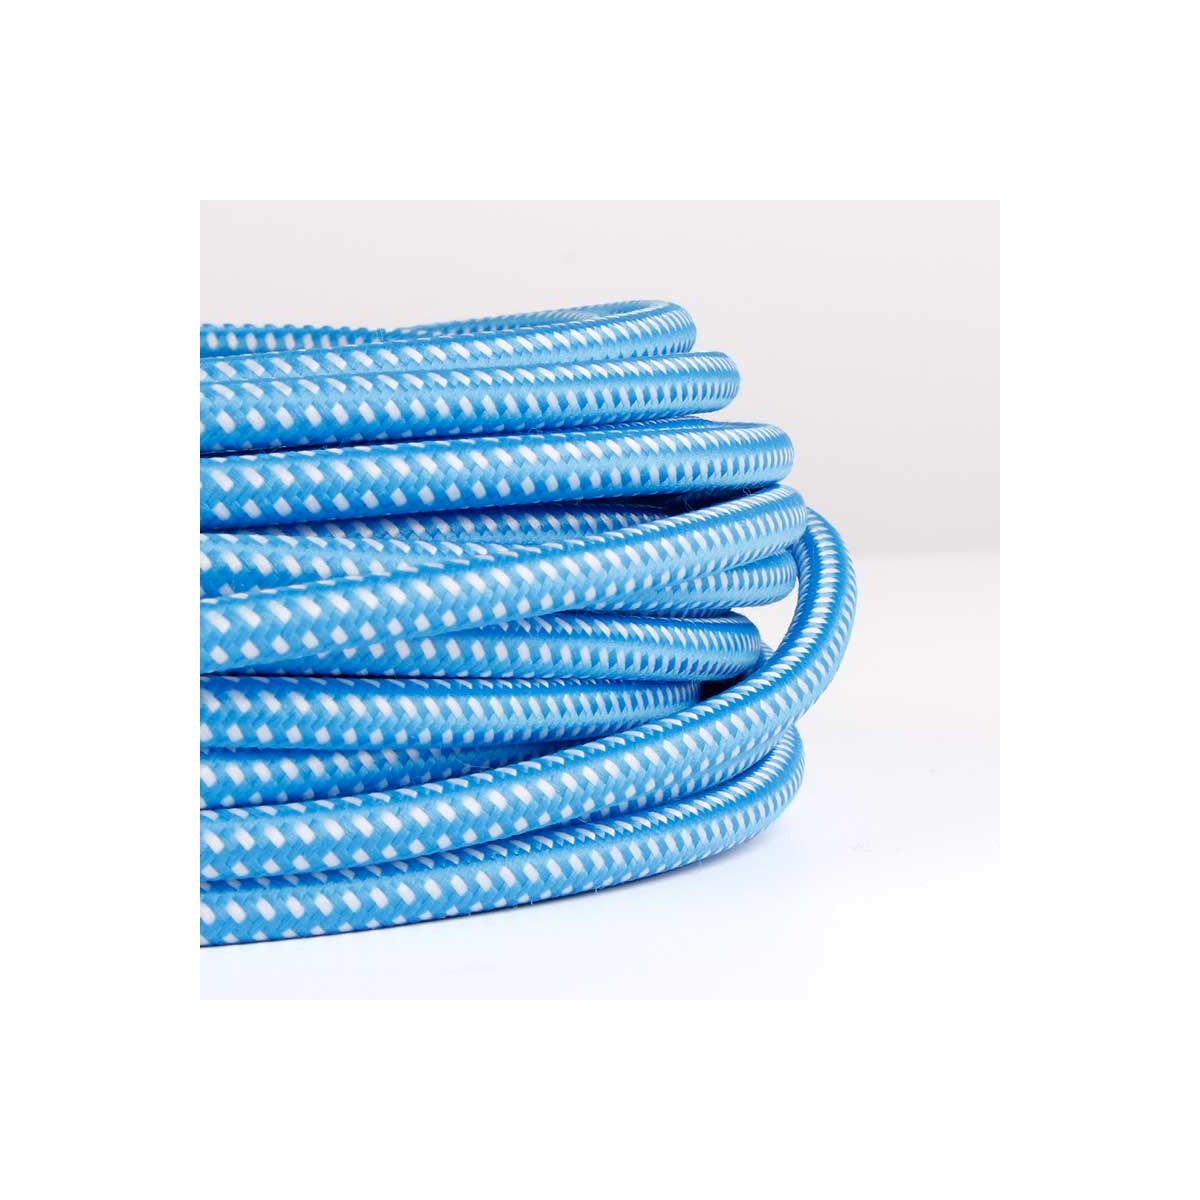 Rundes elektrisches Kabel mit Seideneffektgewebe in den Farben Blau und Weiß